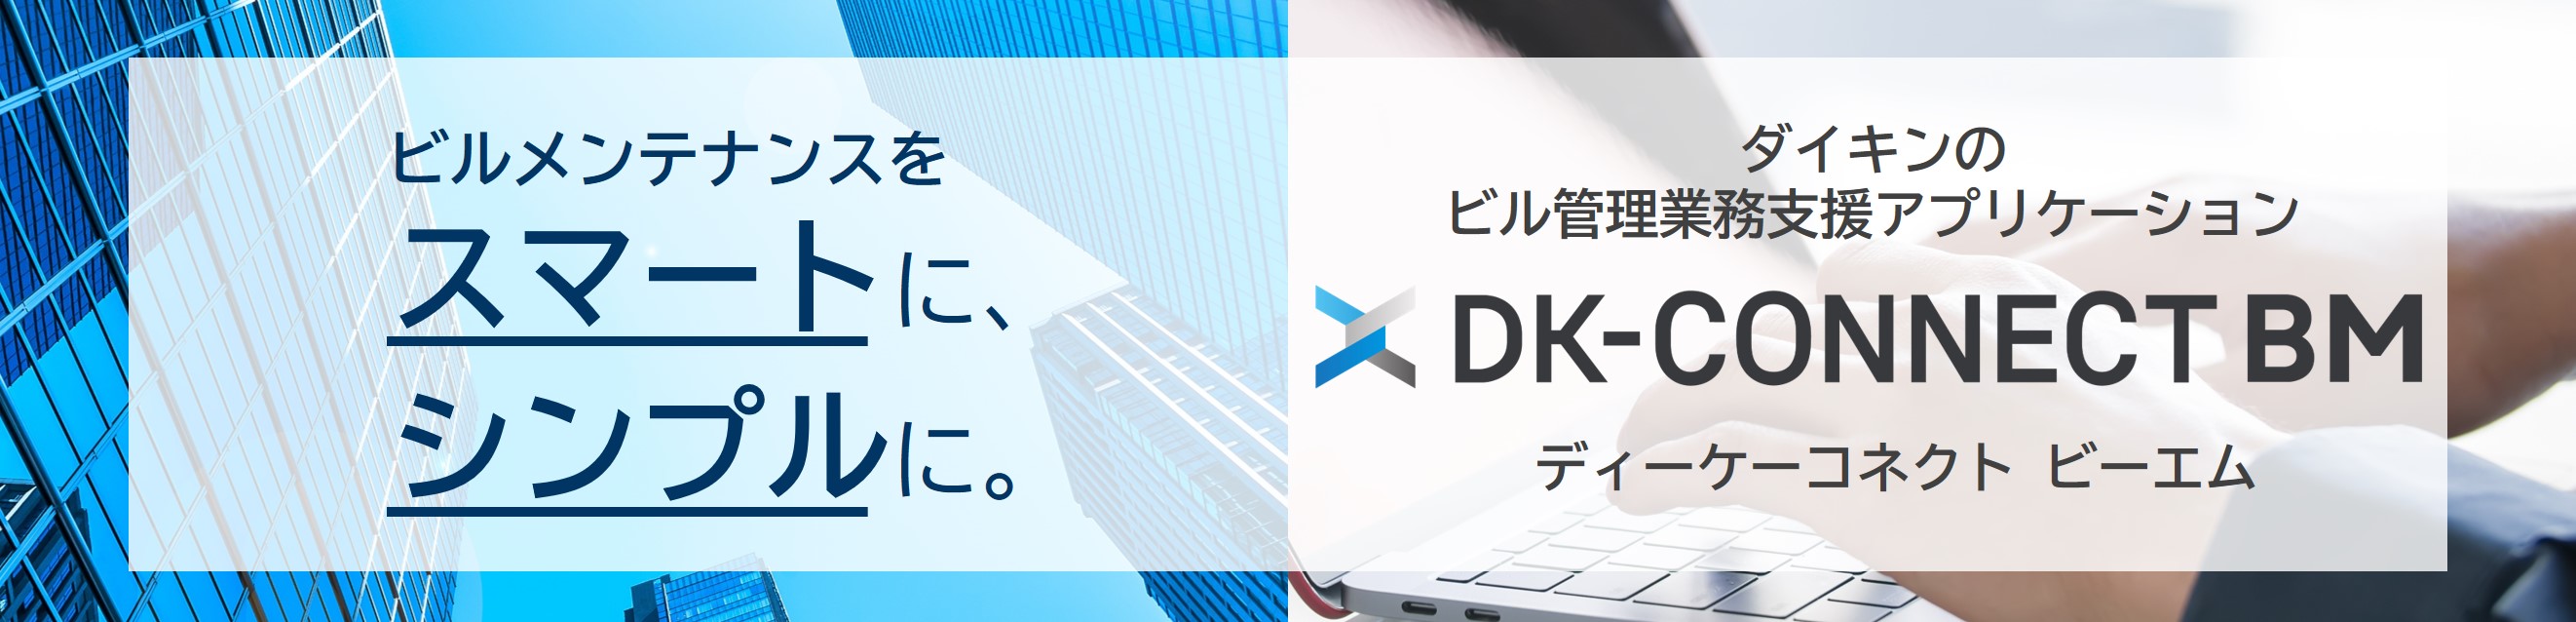 ビルメンテナンスをスマートに、シンプルに。ダイキンのビル管理業務支援アプリケーション DK-CONNECT BM ディーケーコネクト ビーエム